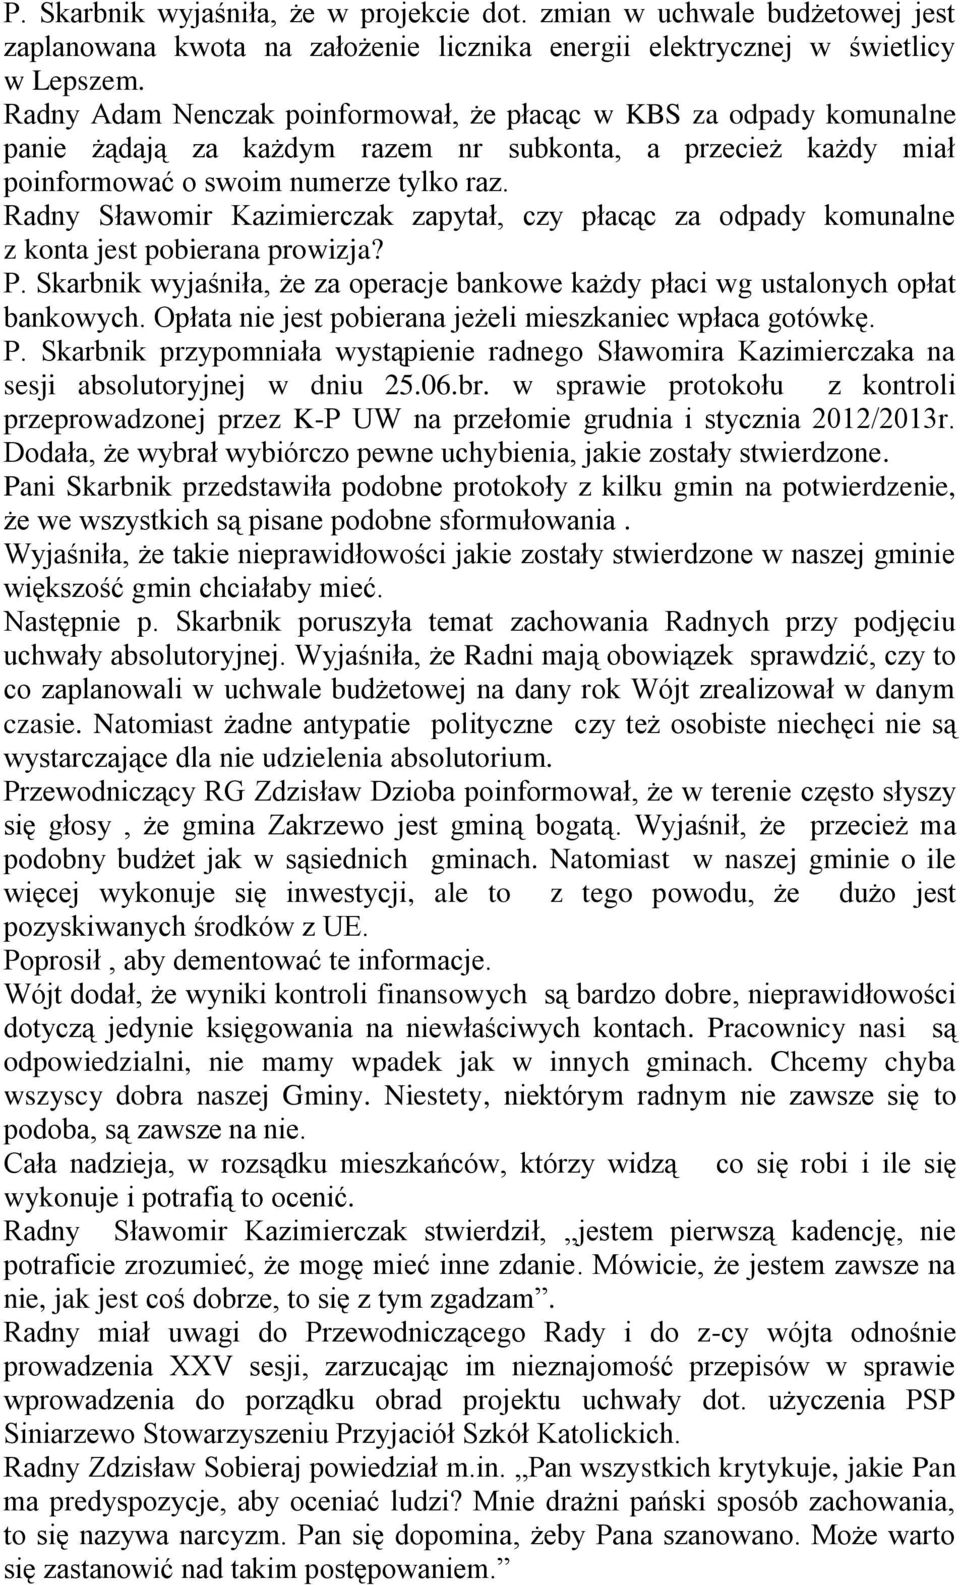 Radny Sławomir Kazimierczak zapytał, czy płacąc za odpady komunalne z konta jest pobierana prowizja? P. Skarbnik wyjaśniła, że za operacje bankowe każdy płaci wg ustalonych opłat bankowych.